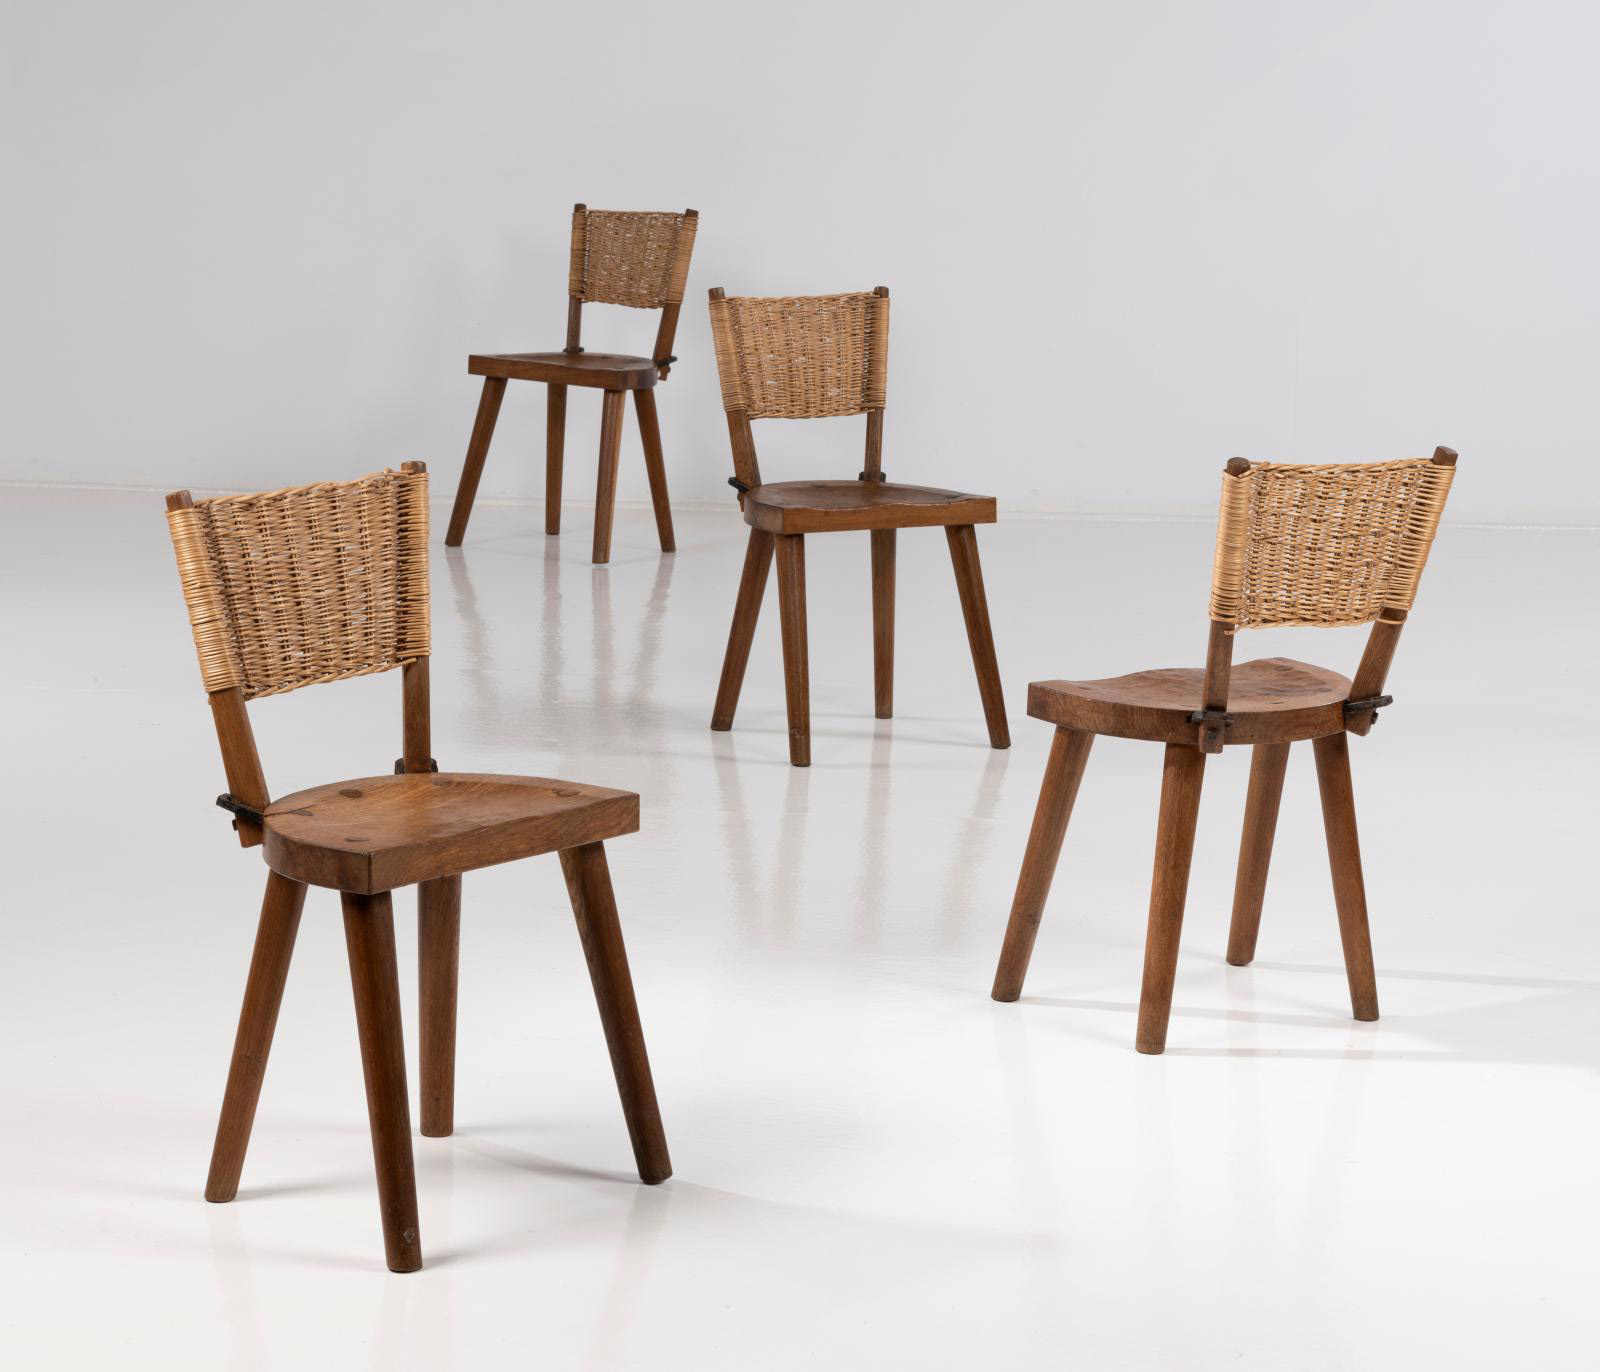 Jean Touret (1916–2004) & Les Artisans de Marolles, set of four chairs, c. 1955, gouged oak, wicker and wrought iron, 79 x 44 x 36 cm/ 31.